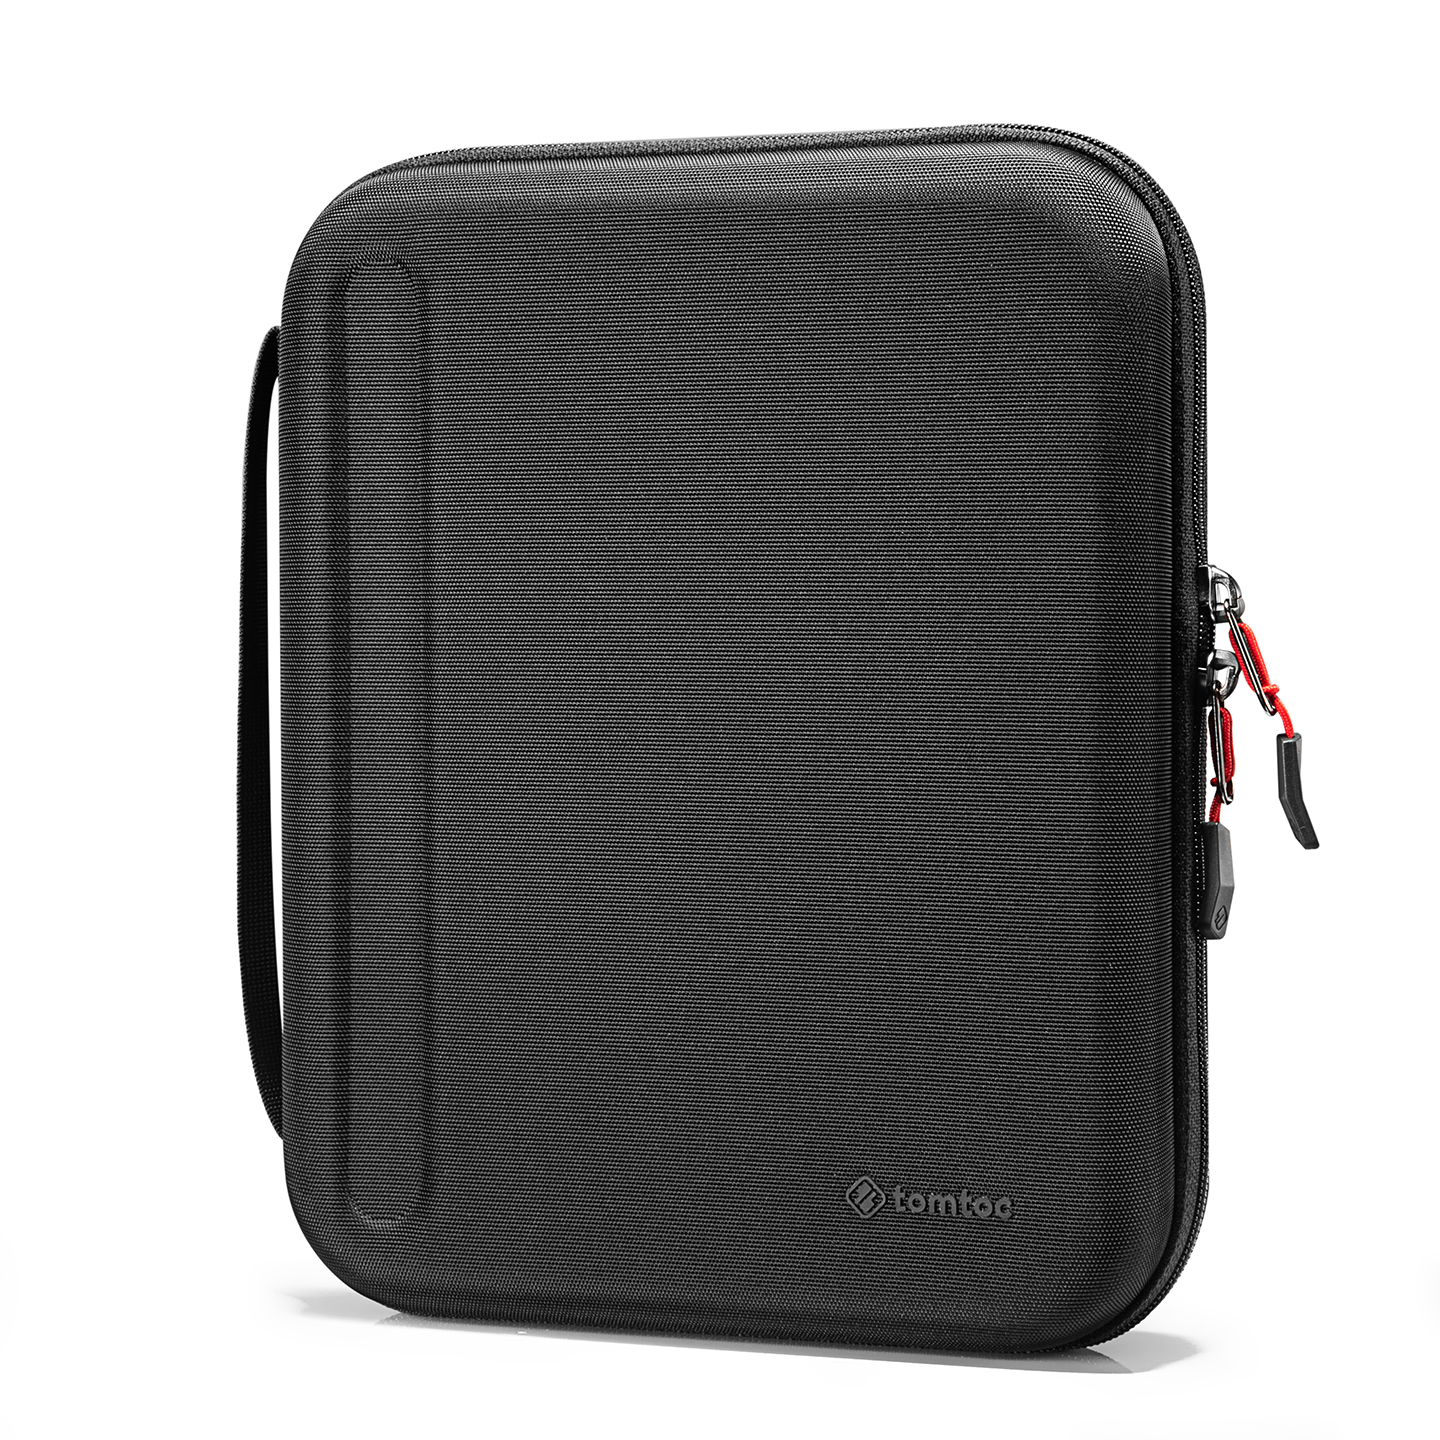 Tomtoc A06-004D01 - B06B1D1 Fancy Case-A06 12.9 Siyah iPad Kılıfı